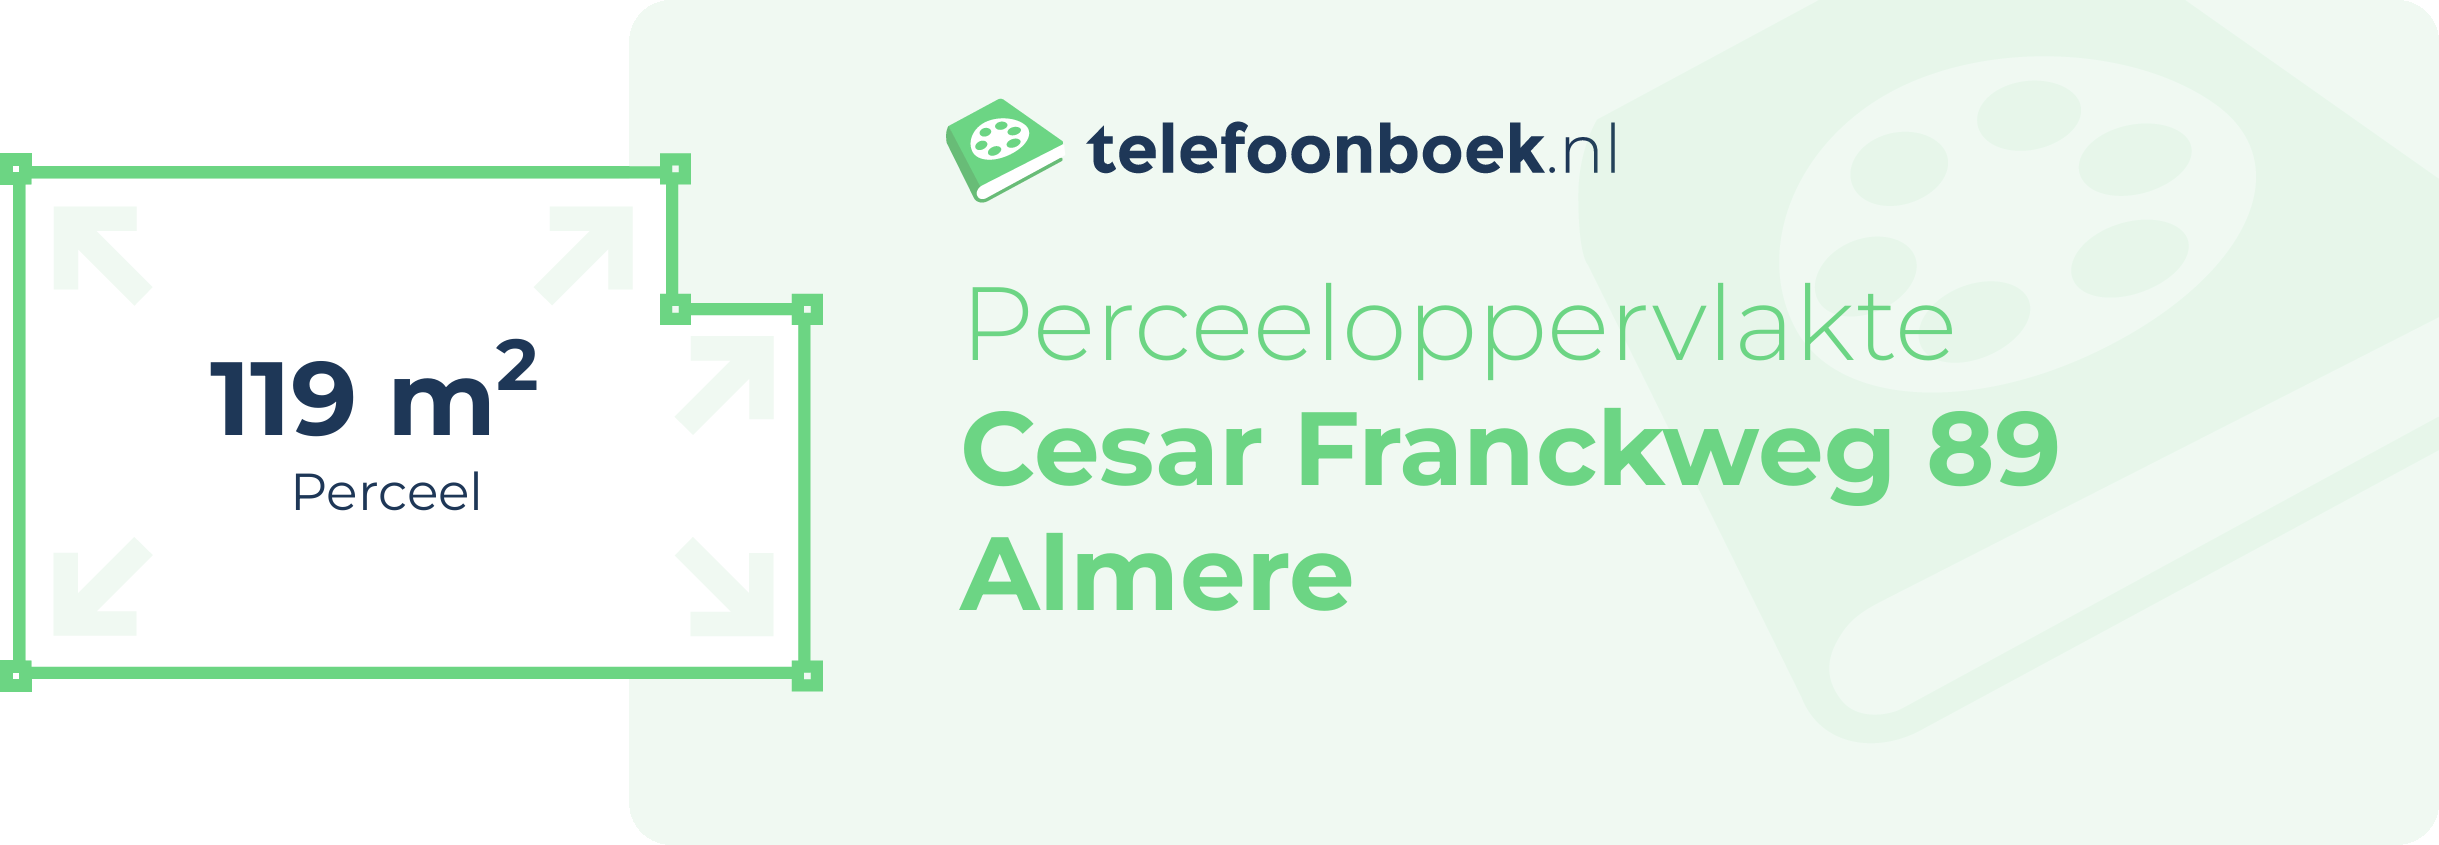 Perceeloppervlakte Cesar Franckweg 89 Almere